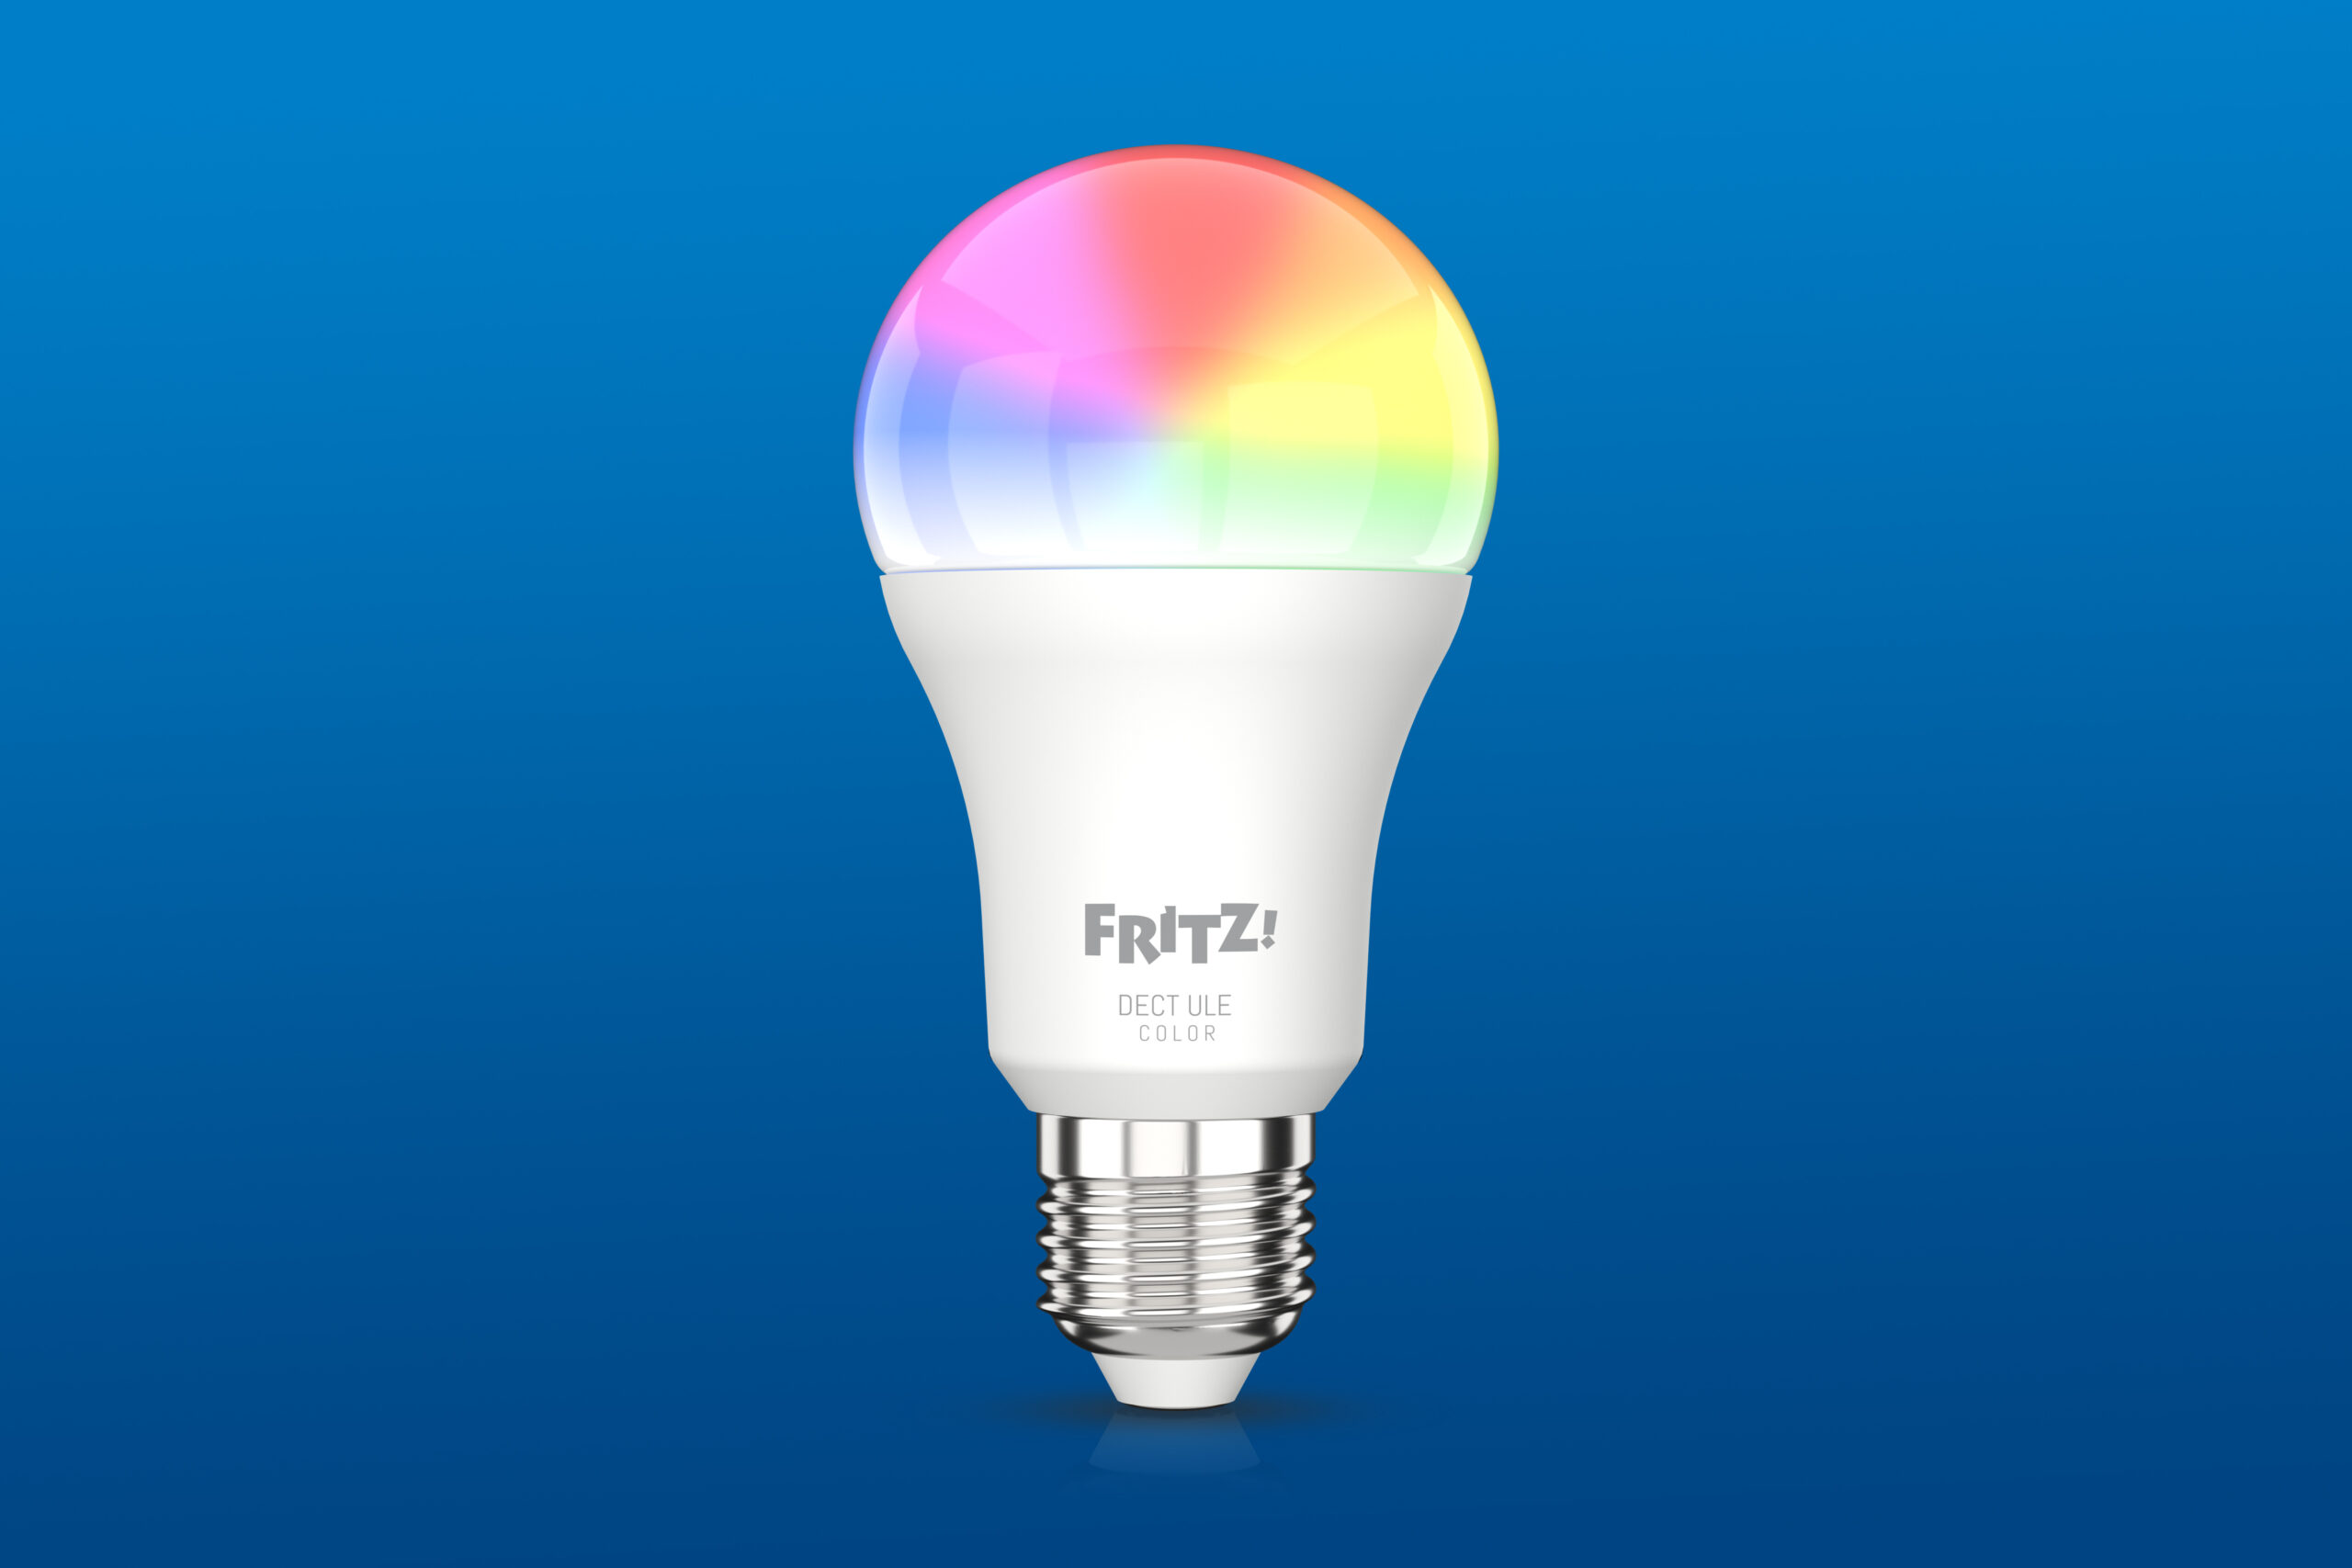 RITZ!DECT 500, disponibile la nuova lampada LED smart da FRITZ!